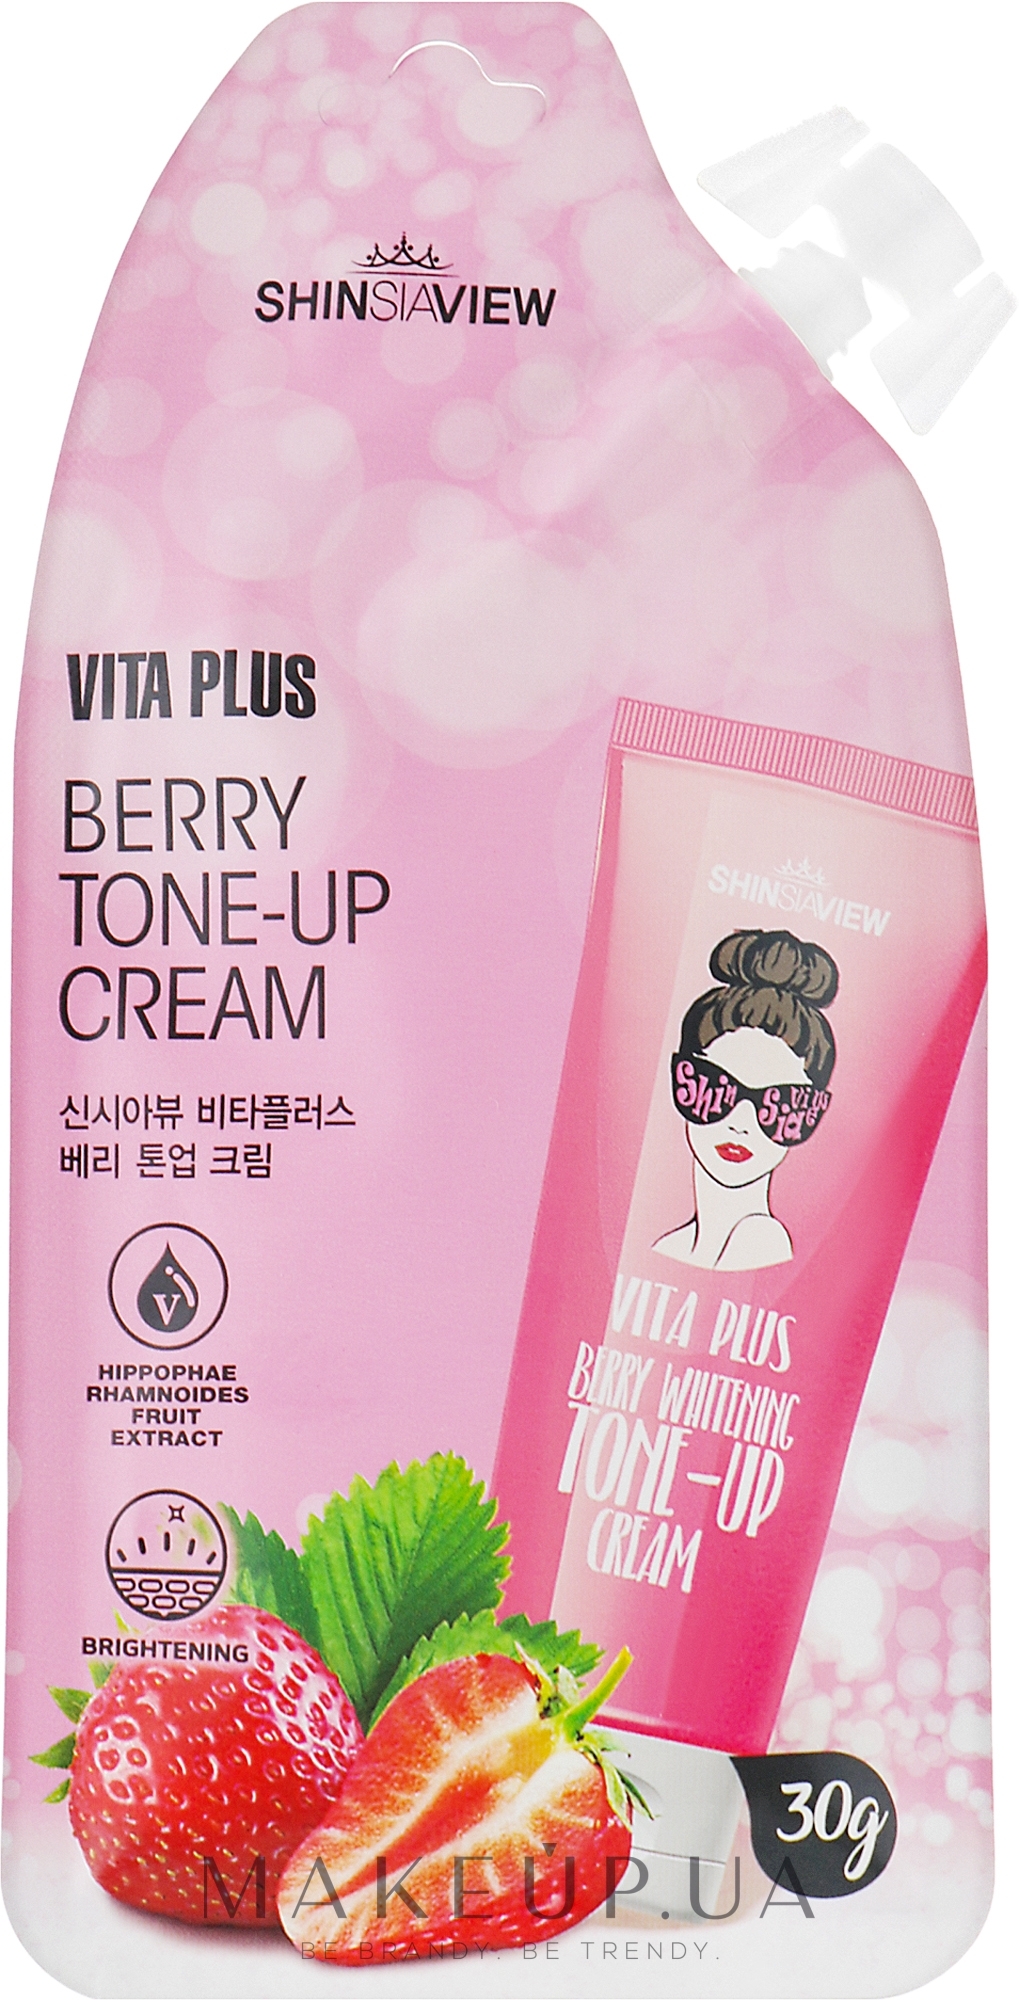 Відбілювальний крем для обличчя - Shinsiaview Vita Plus Berry Tone-Up Cream — фото 30g